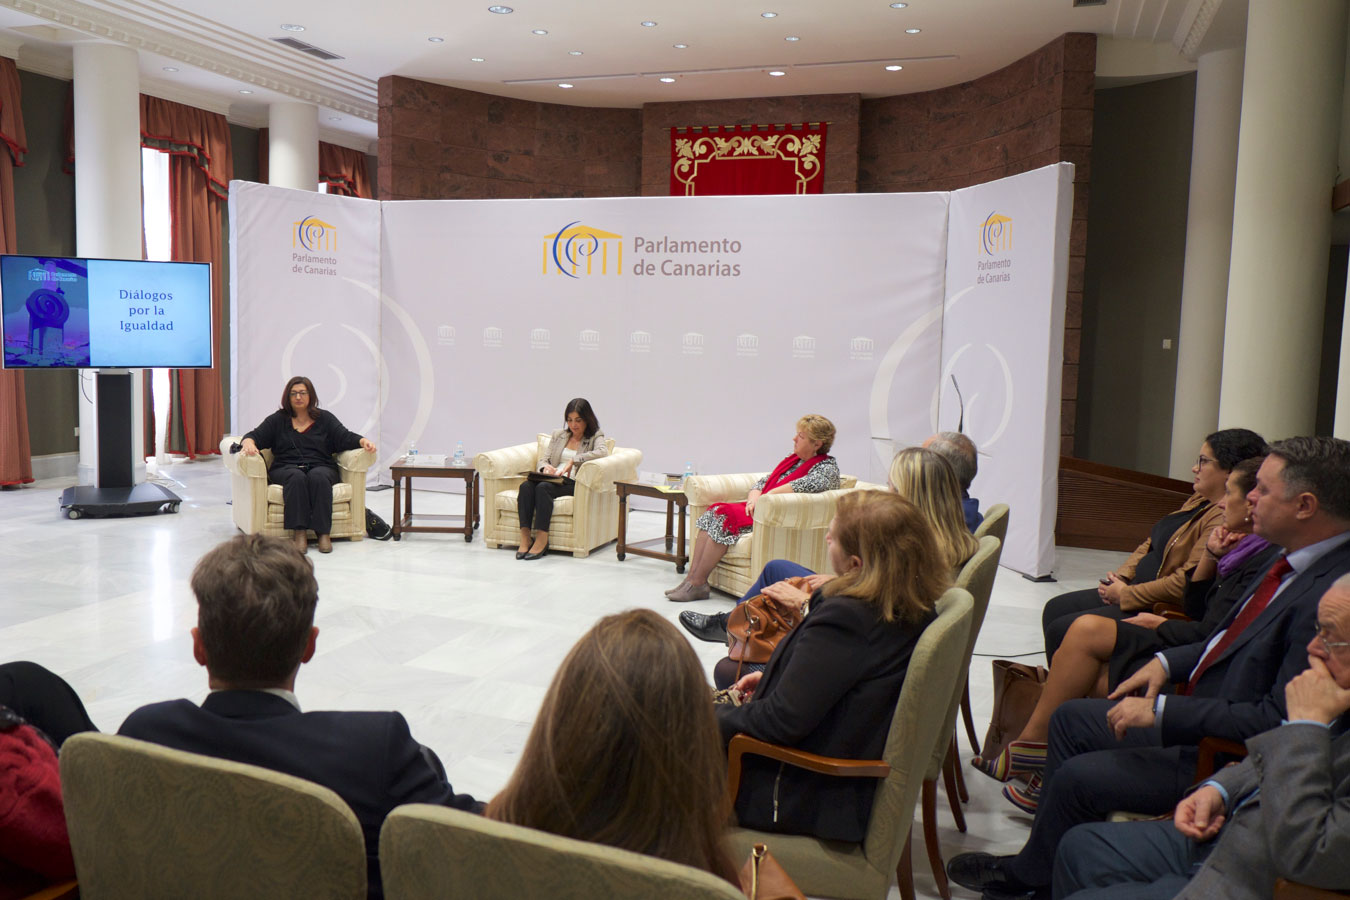 Diálogo sobre la igualdad de las mujeres en el Parlamento de Canarias.